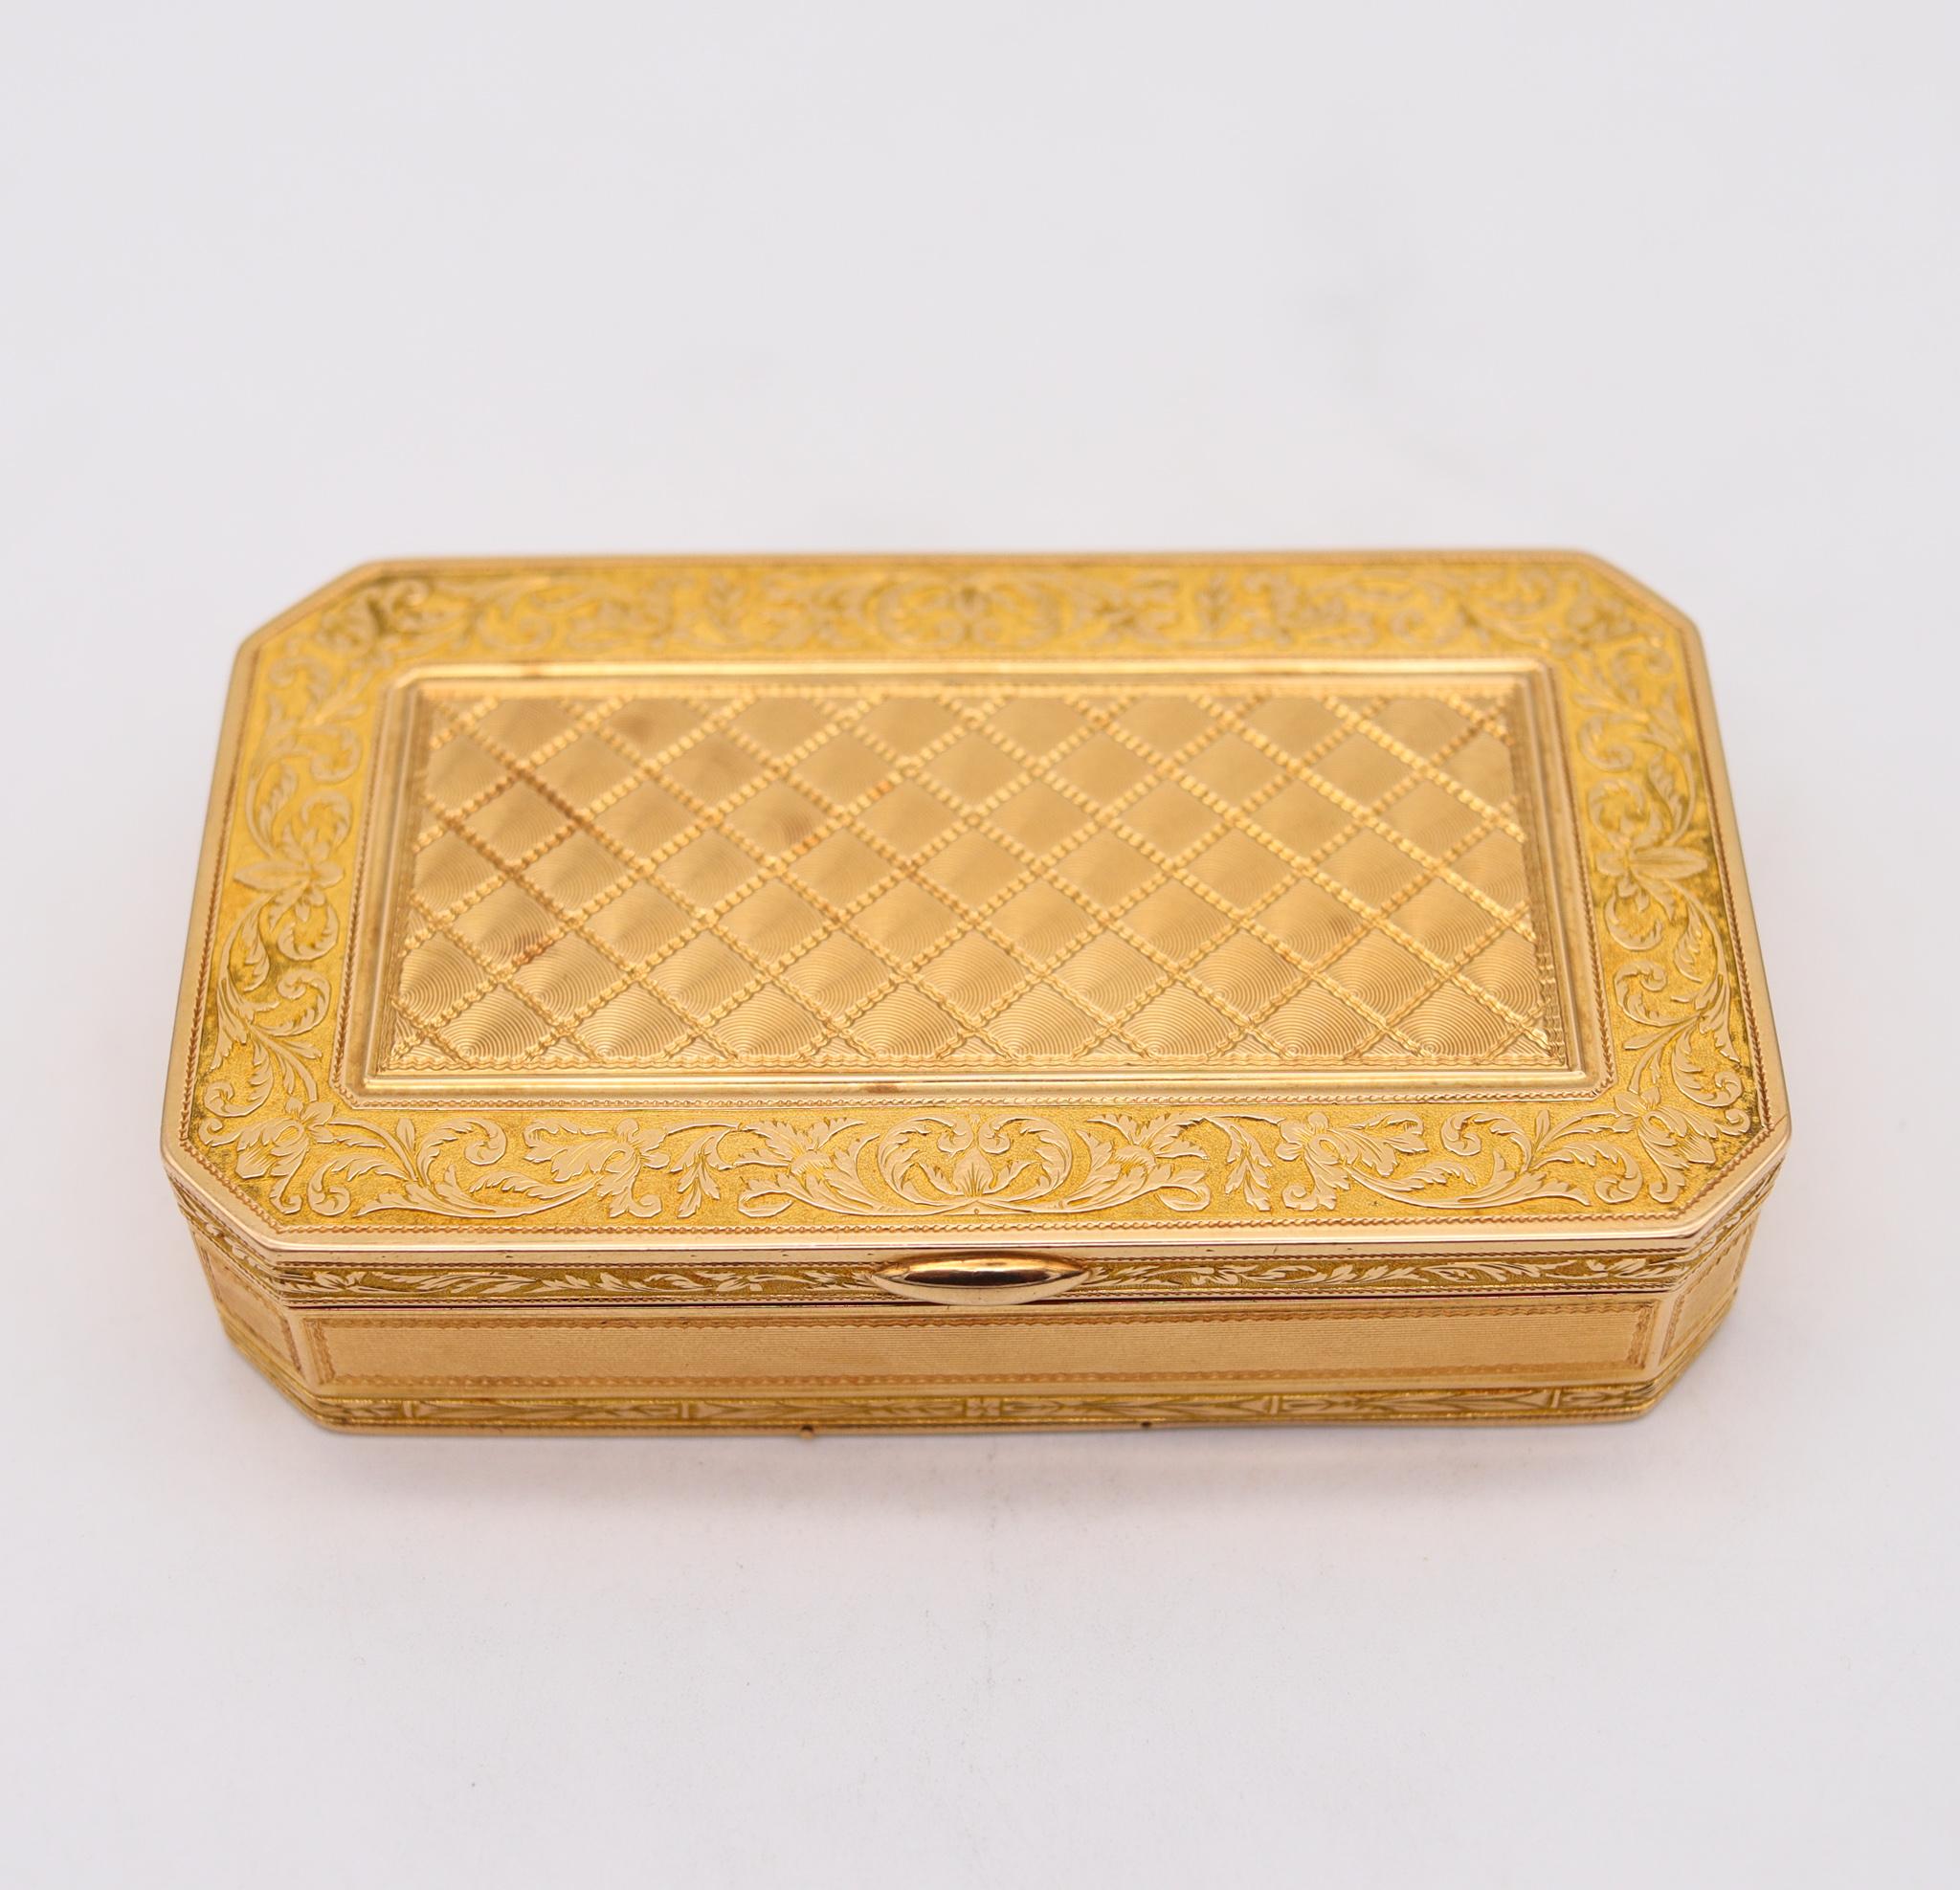 Französische Schnupftabakdose aus massivem Gold.

Außergewöhnliche rechteckige Schnupftabakdose, hergestellt in Paris Frankreich während der zweiten monarchischen Restaurationsperiode, zwischen 1818 und 1838. Er wurde sorgfältig im neoklassischen